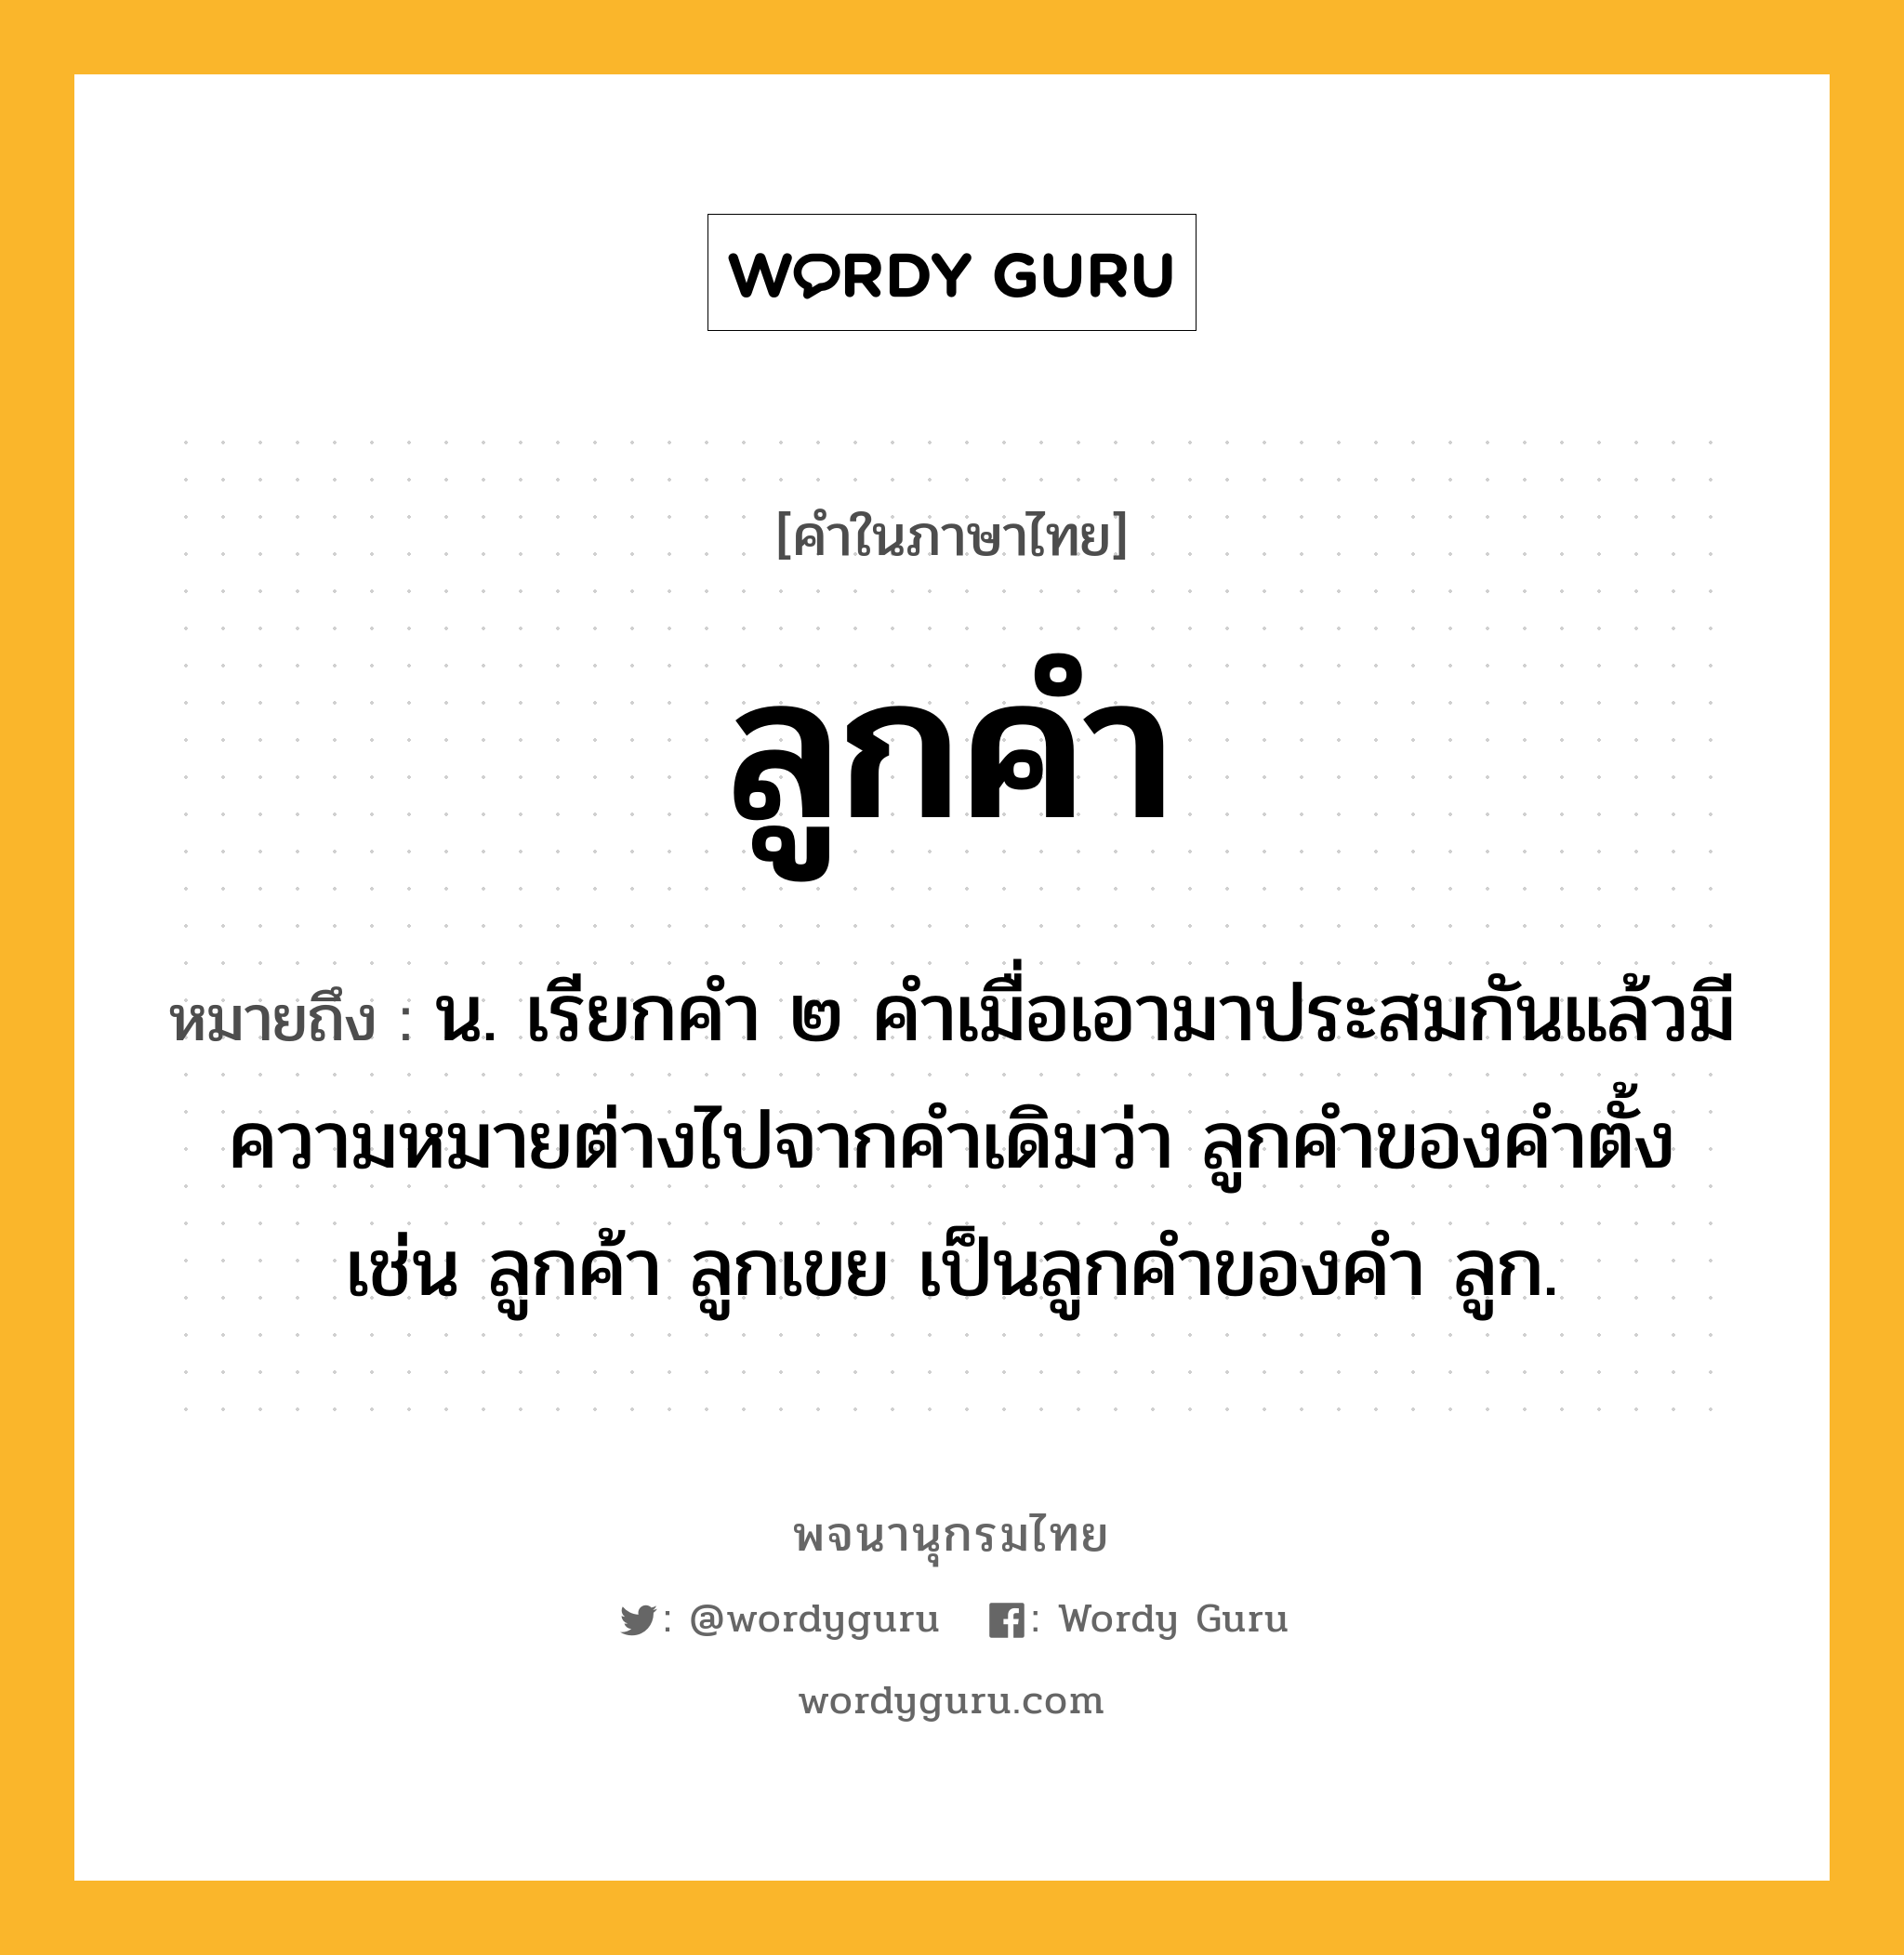 ลูกคำ หมายถึงอะไร?, คำในภาษาไทย ลูกคำ หมายถึง น. เรียกคํา ๒ คําเมื่อเอามาประสมกันแล้วมีความหมายต่างไปจากคําเดิมว่า ลูกคําของคําตั้ง เช่น ลูกค้า ลูกเขย เป็นลูกคําของคํา ลูก.